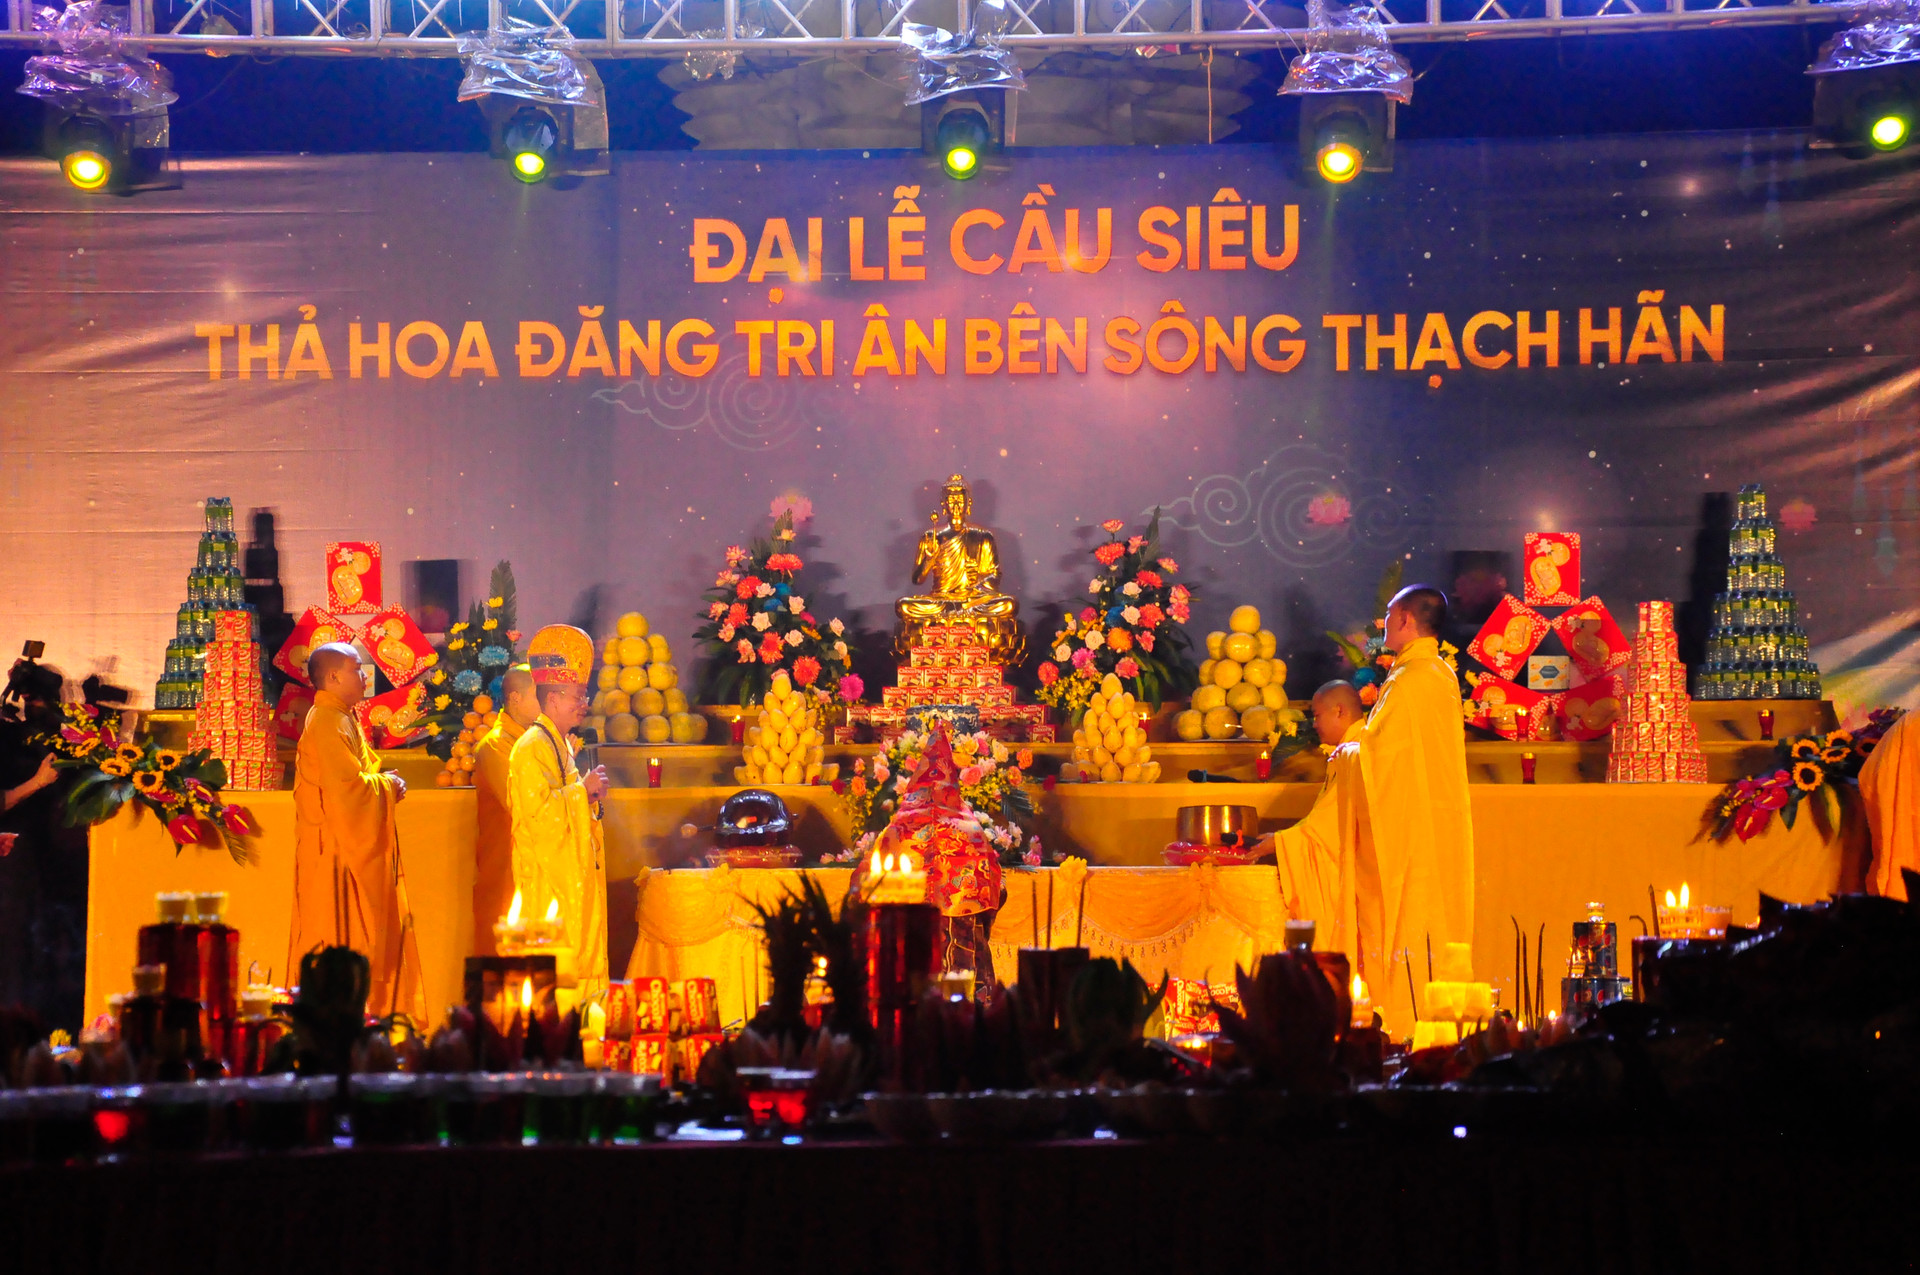 Đại lễ cầu siêu - Thả hoa đăng tri ân bên bờ sông Thạch Hãn tổ chức vào đêm ngày 10/12.